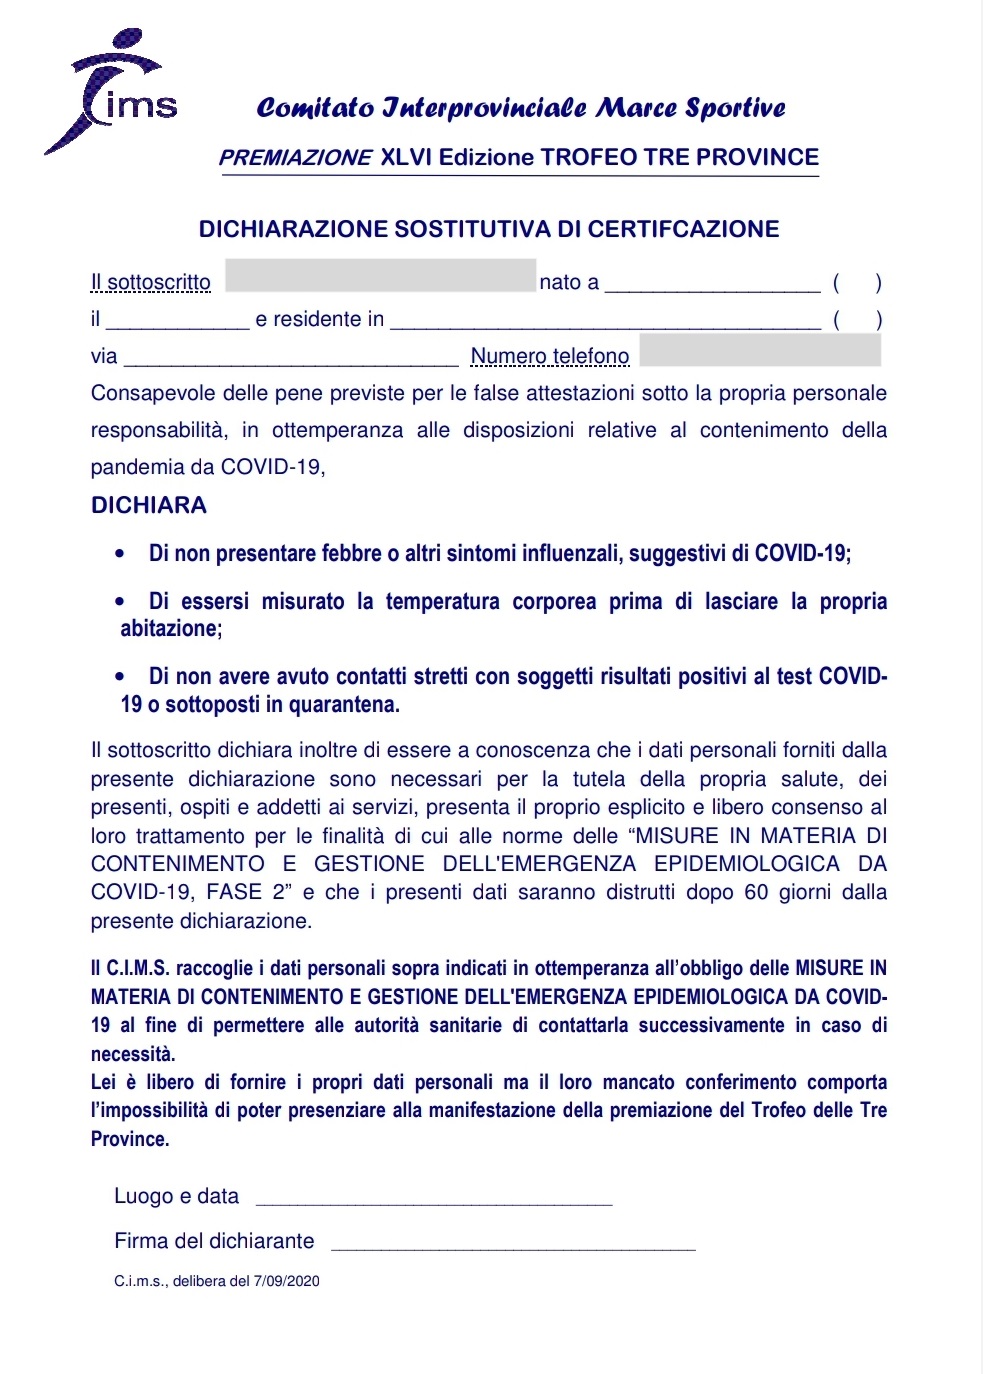 dichiarazione_sostituitiva_certificazione_PREMIAZIONE.jpg